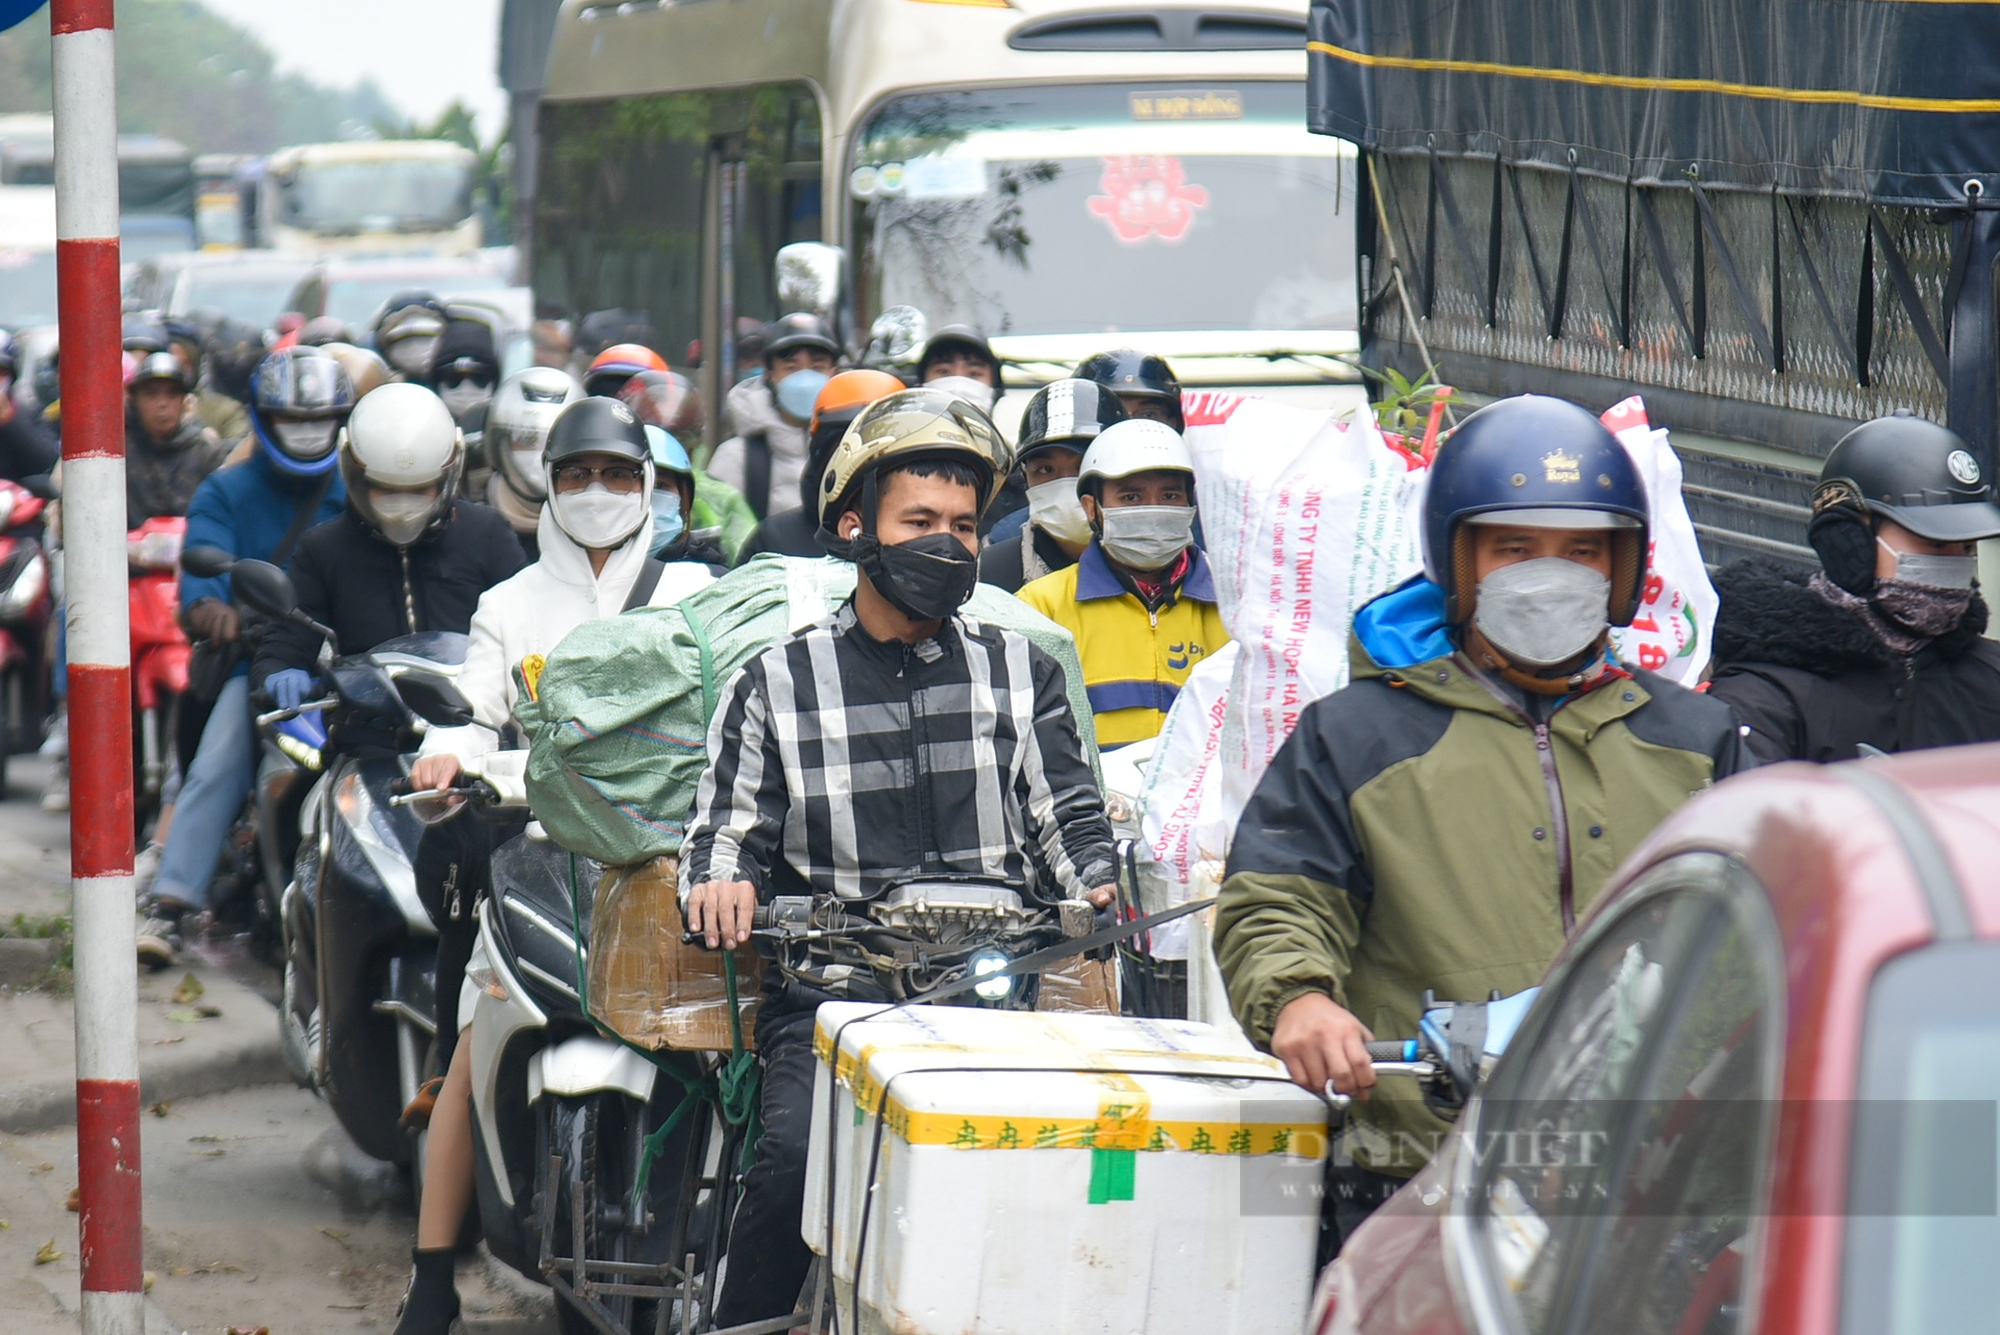 Người dân quay lại Hà Nội sau kỳ nghỉ lễ Tết dương, cửa ngõ Thủ đô ùn tắc kéo dài - Ảnh 6.